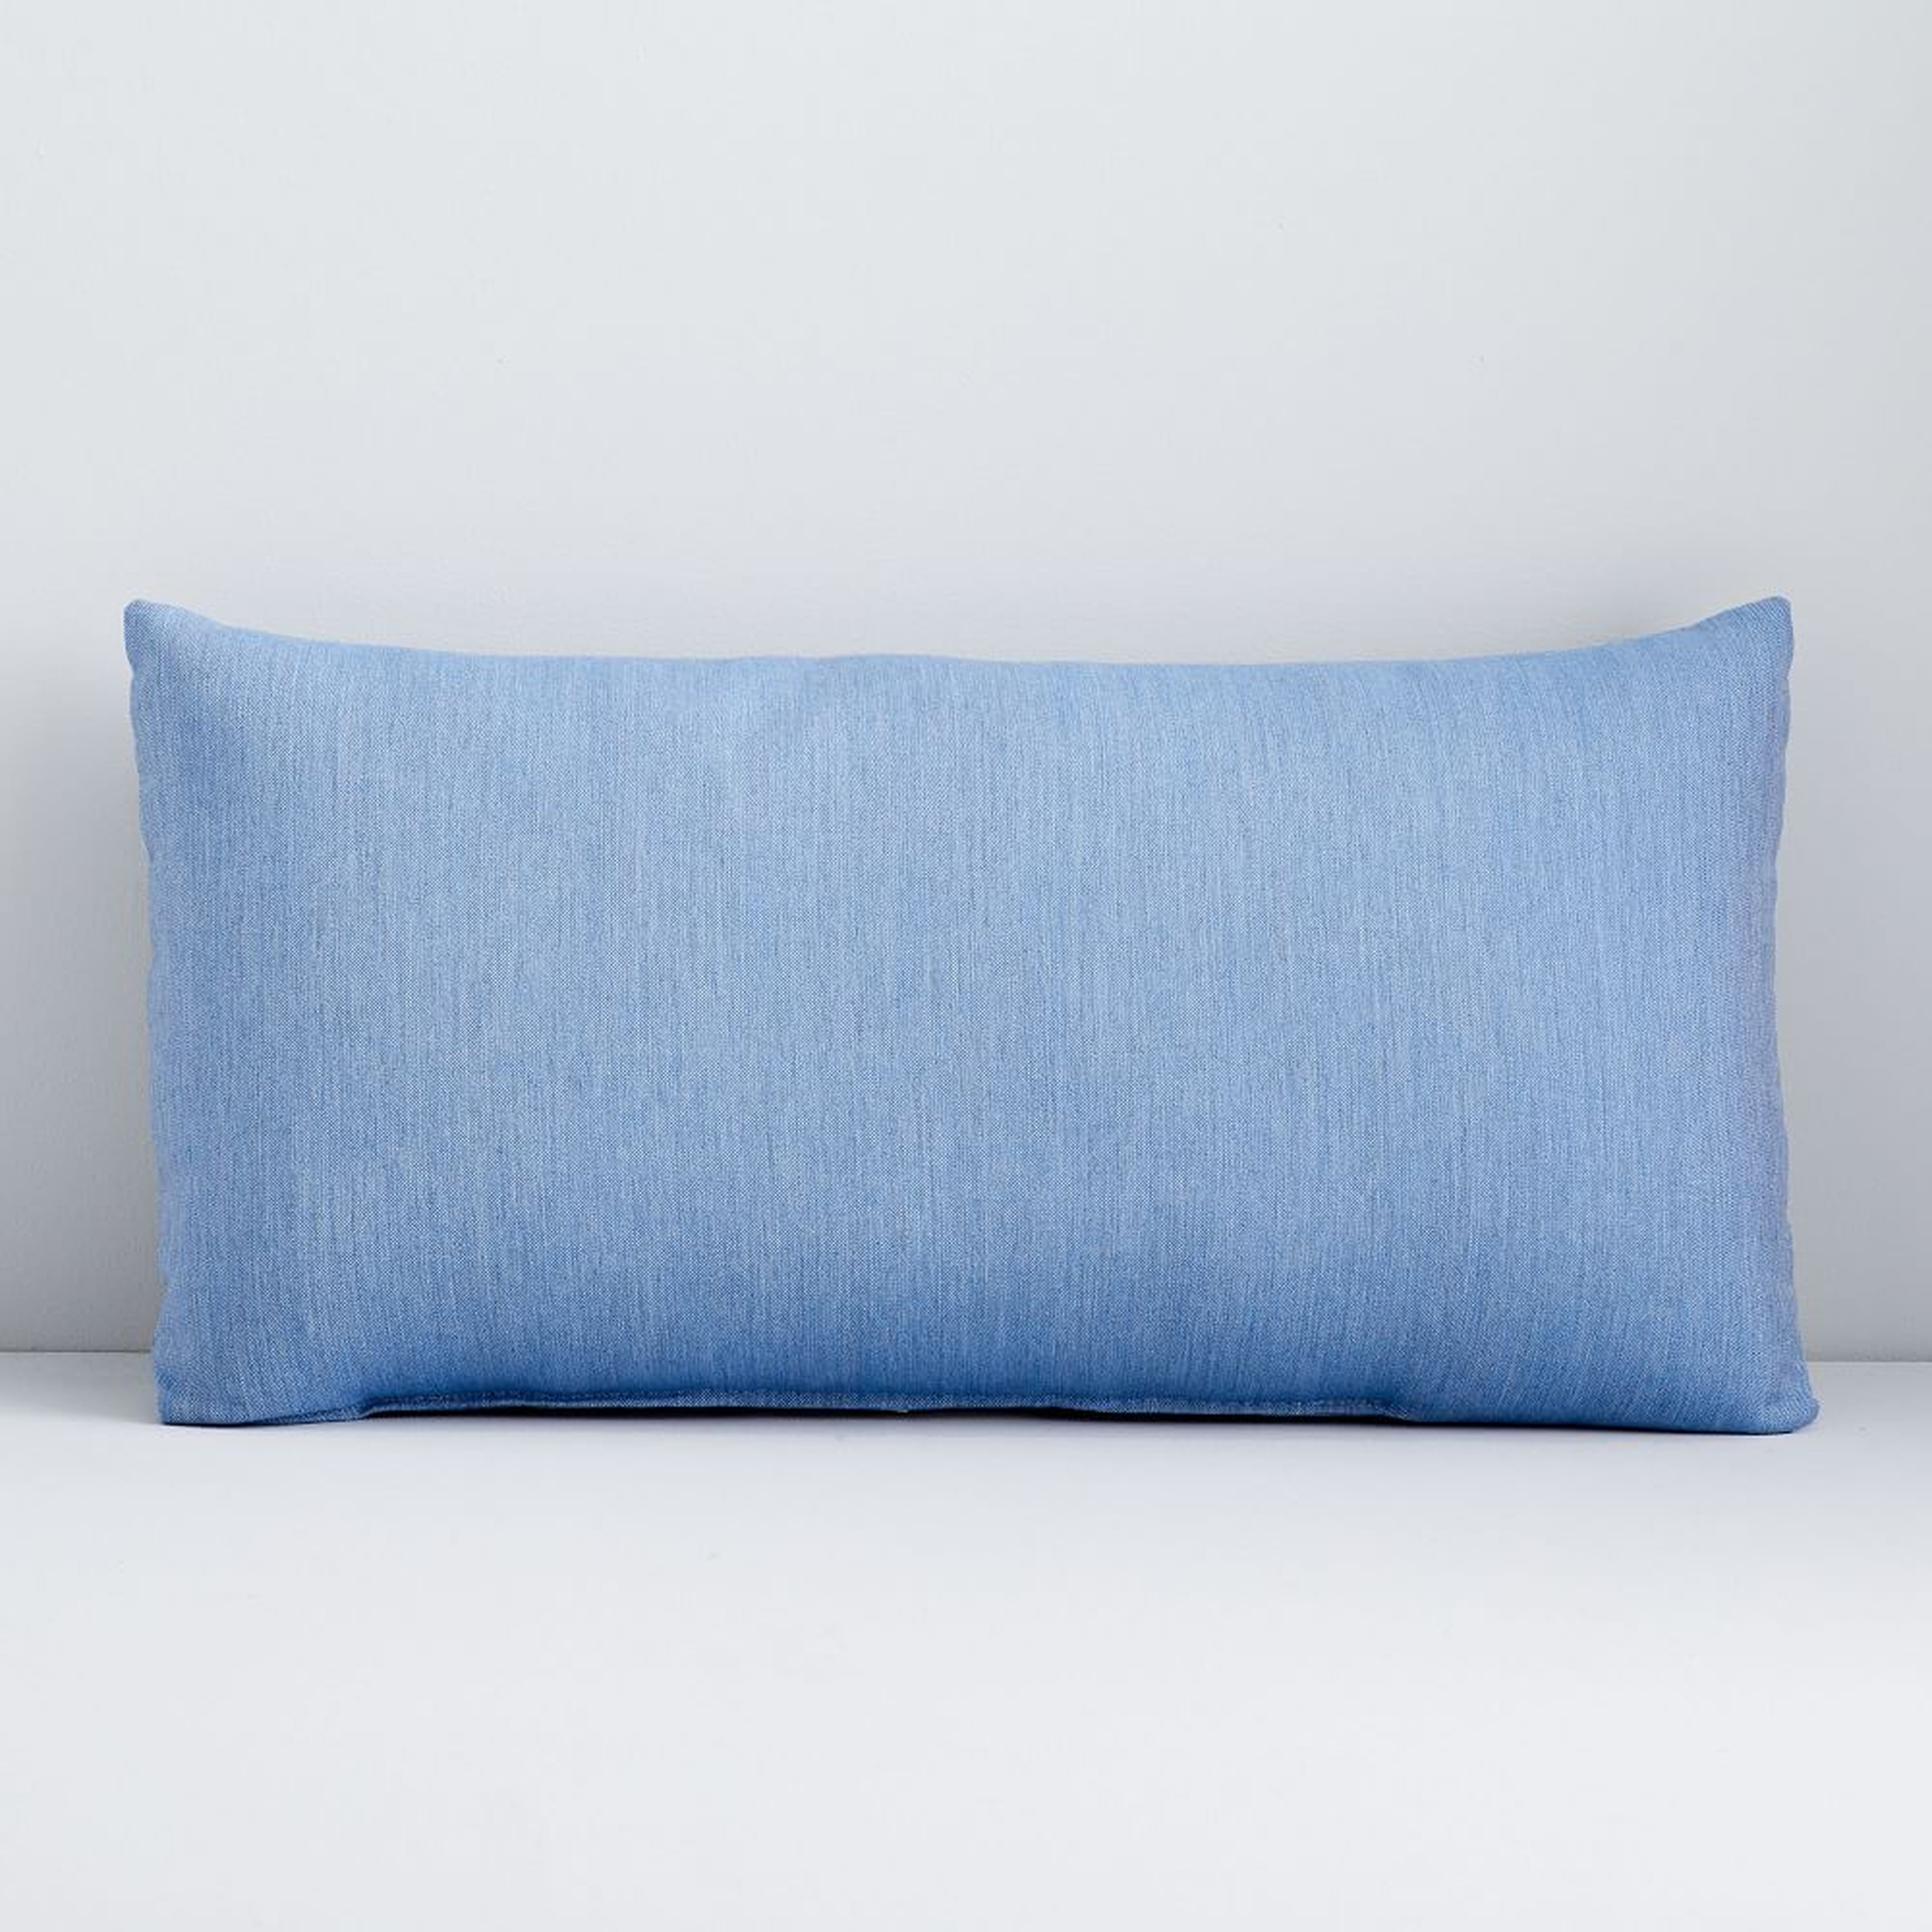 Sunbrella Indoor/Outdoor Cast Pillow, 12"x21", Ocean - West Elm